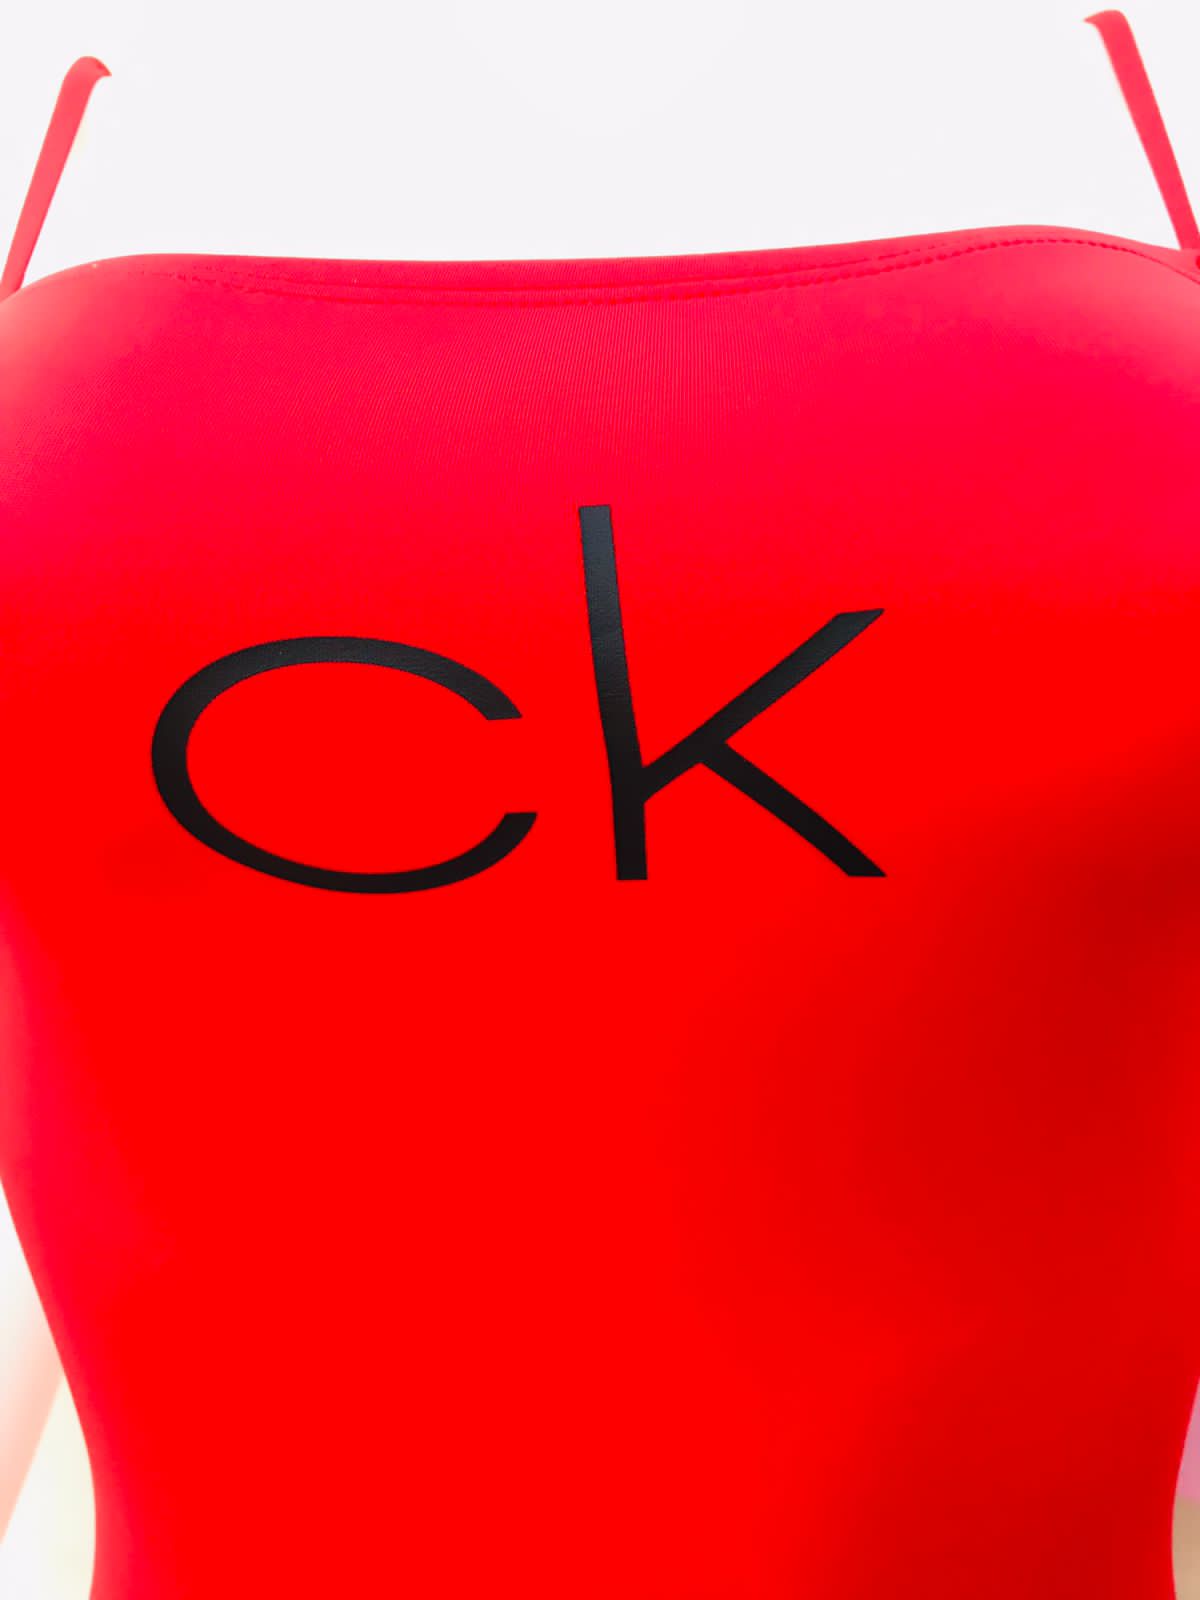 Biquini Calvin Klein original de color rojo con diseño de letra CK en negro al frente